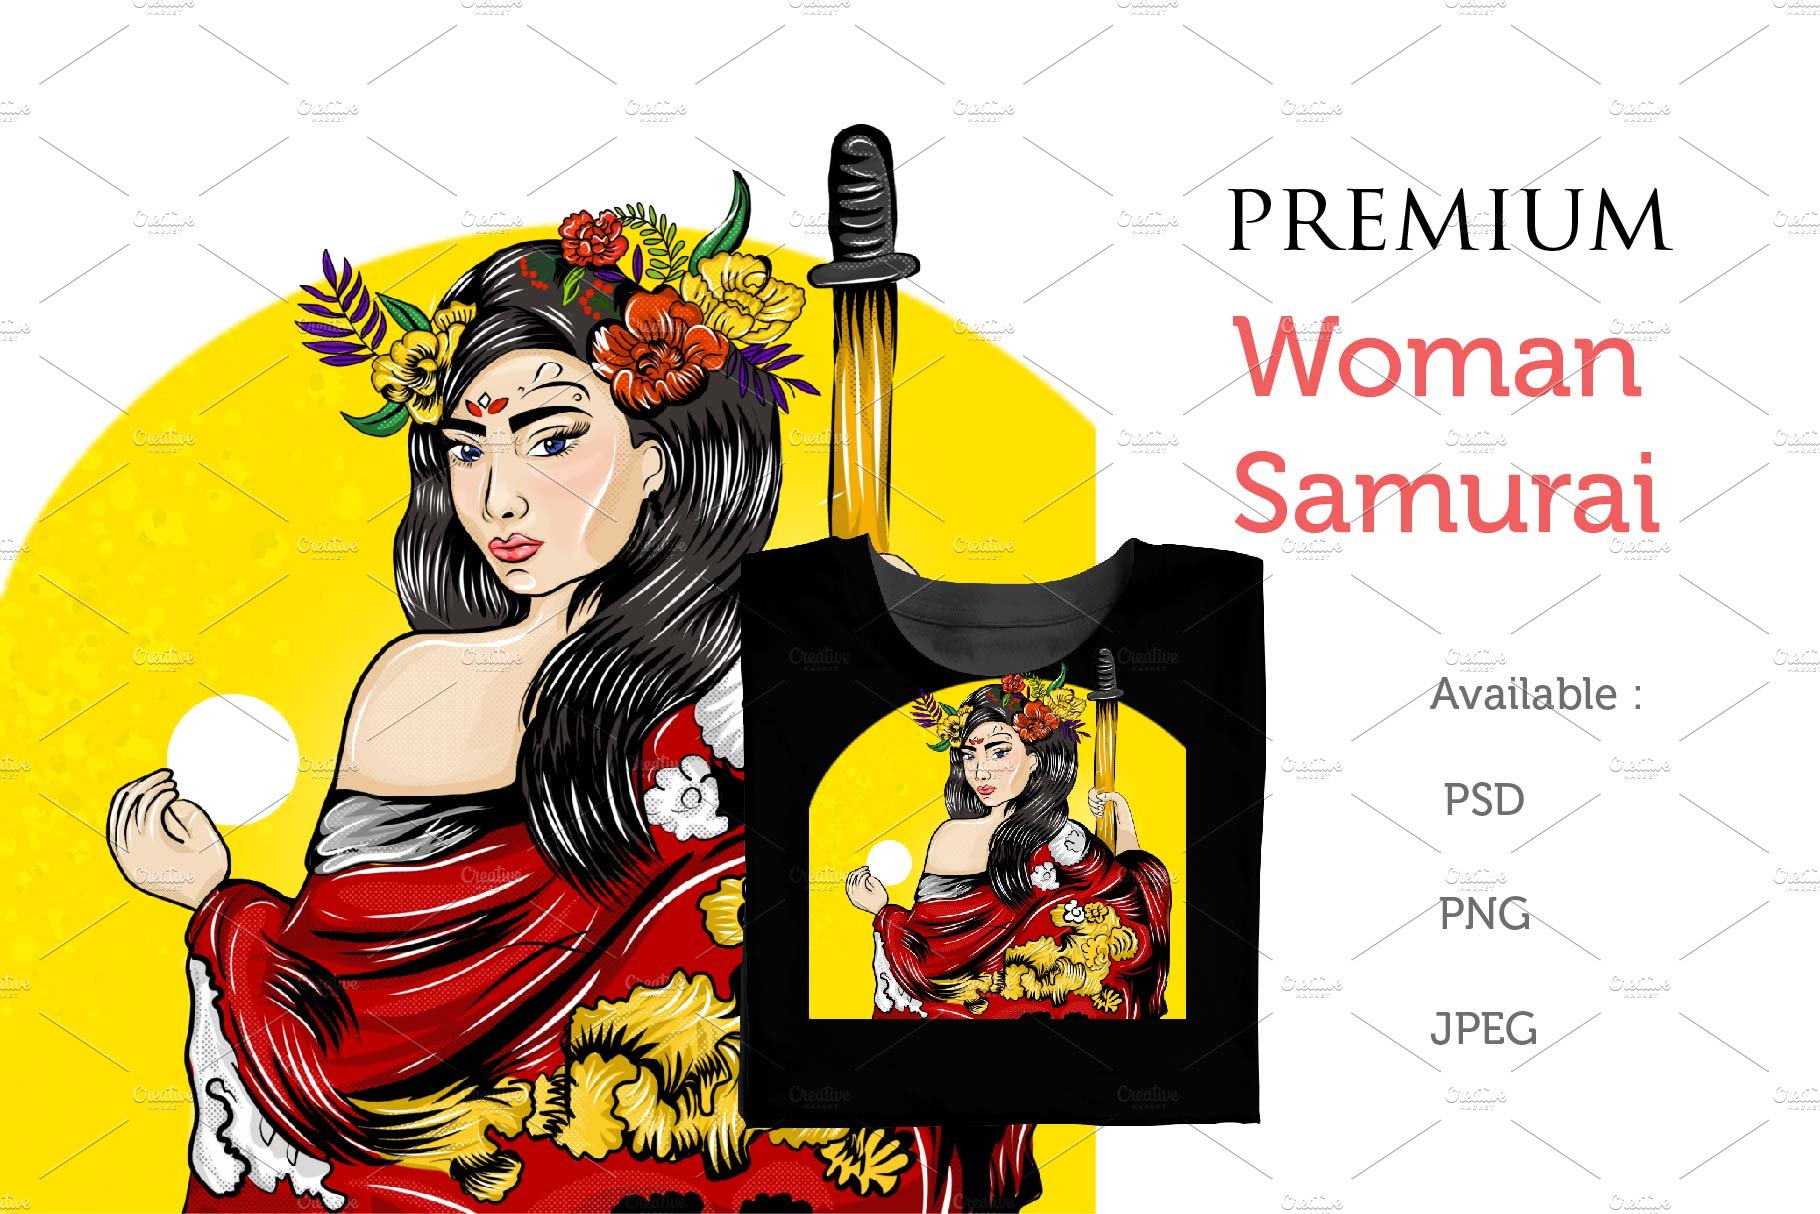 Premium Woman Samurai cover image.